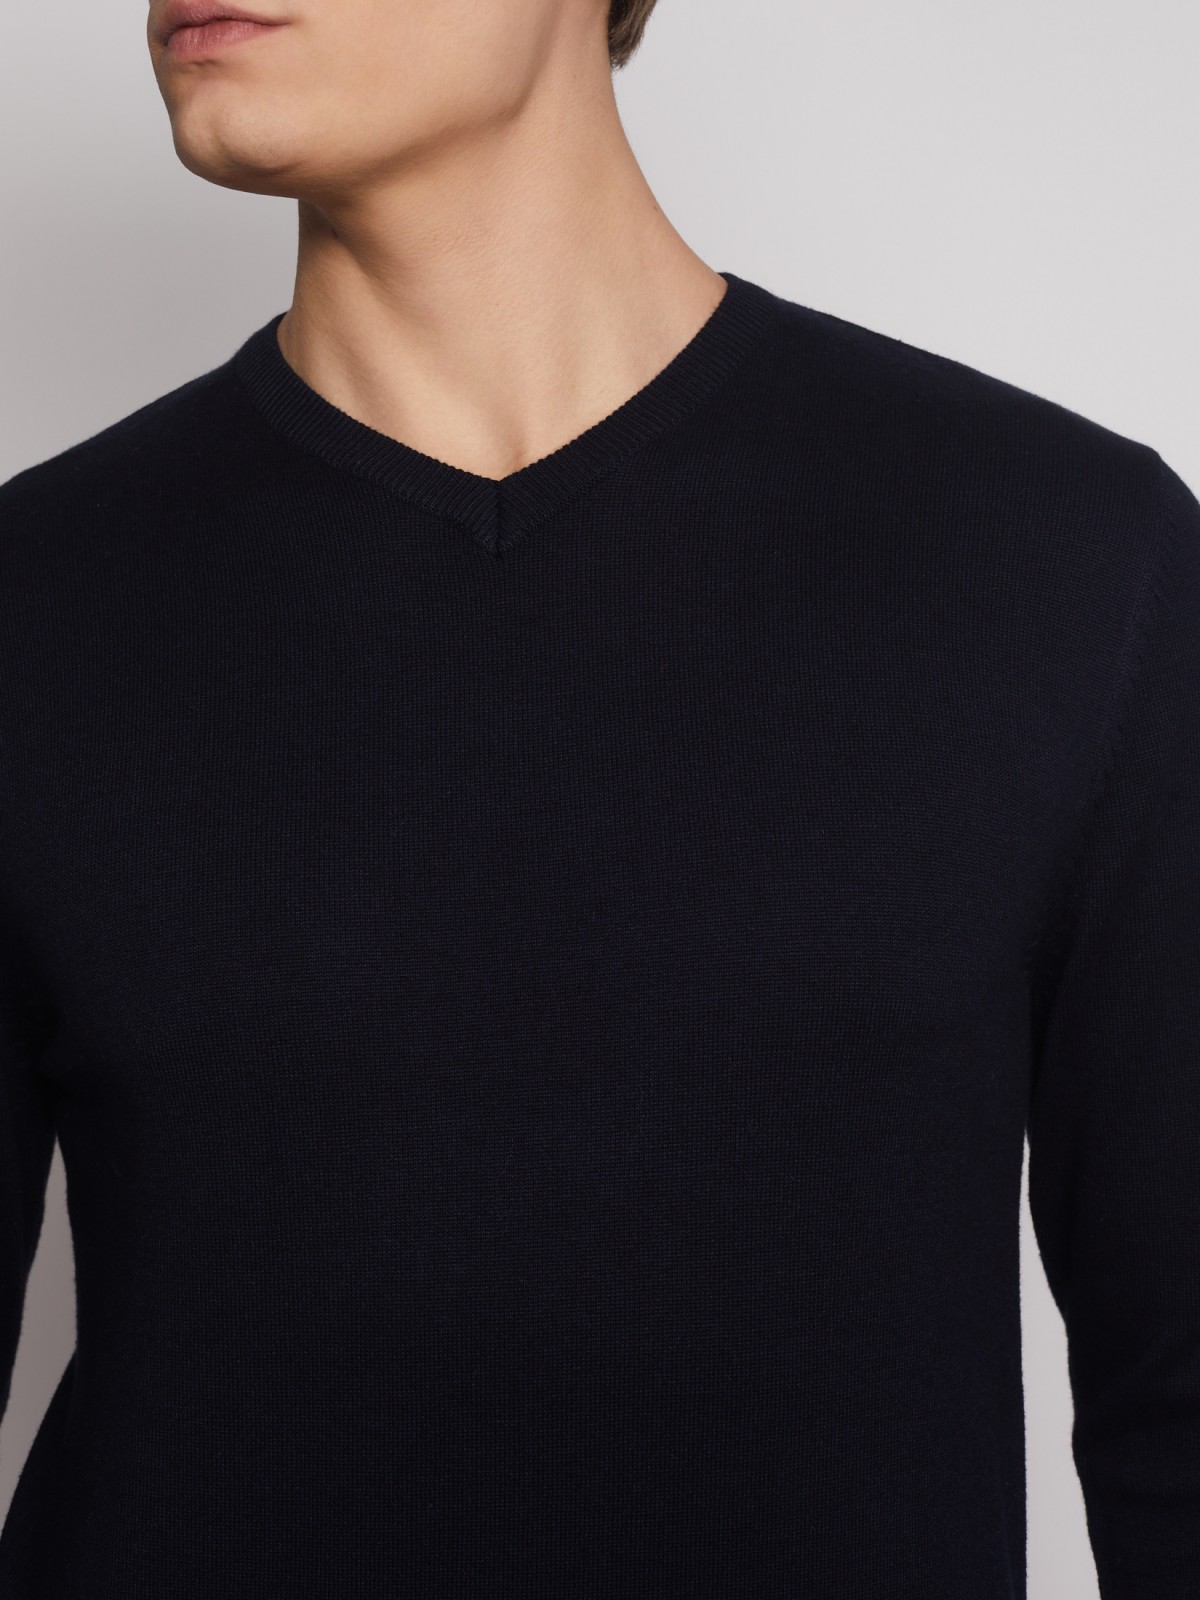 Пуловер с V-образным вырезом zolla 012336183012, цвет синий, размер S - фото 5